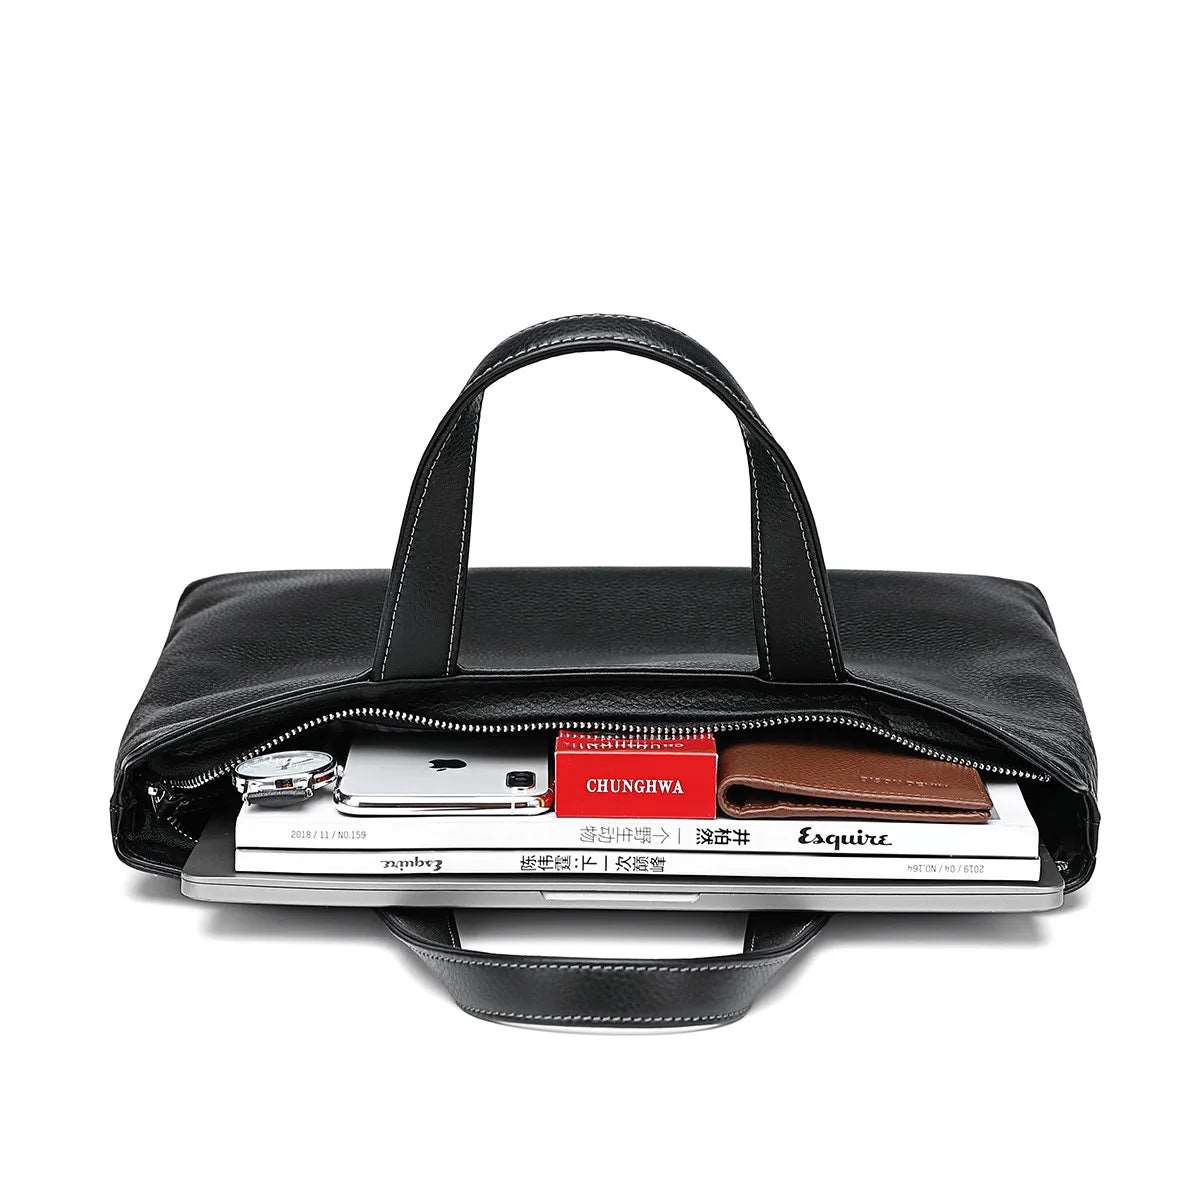 BISON DENIM Luxury Genuine Leather Business Men's Briefcase